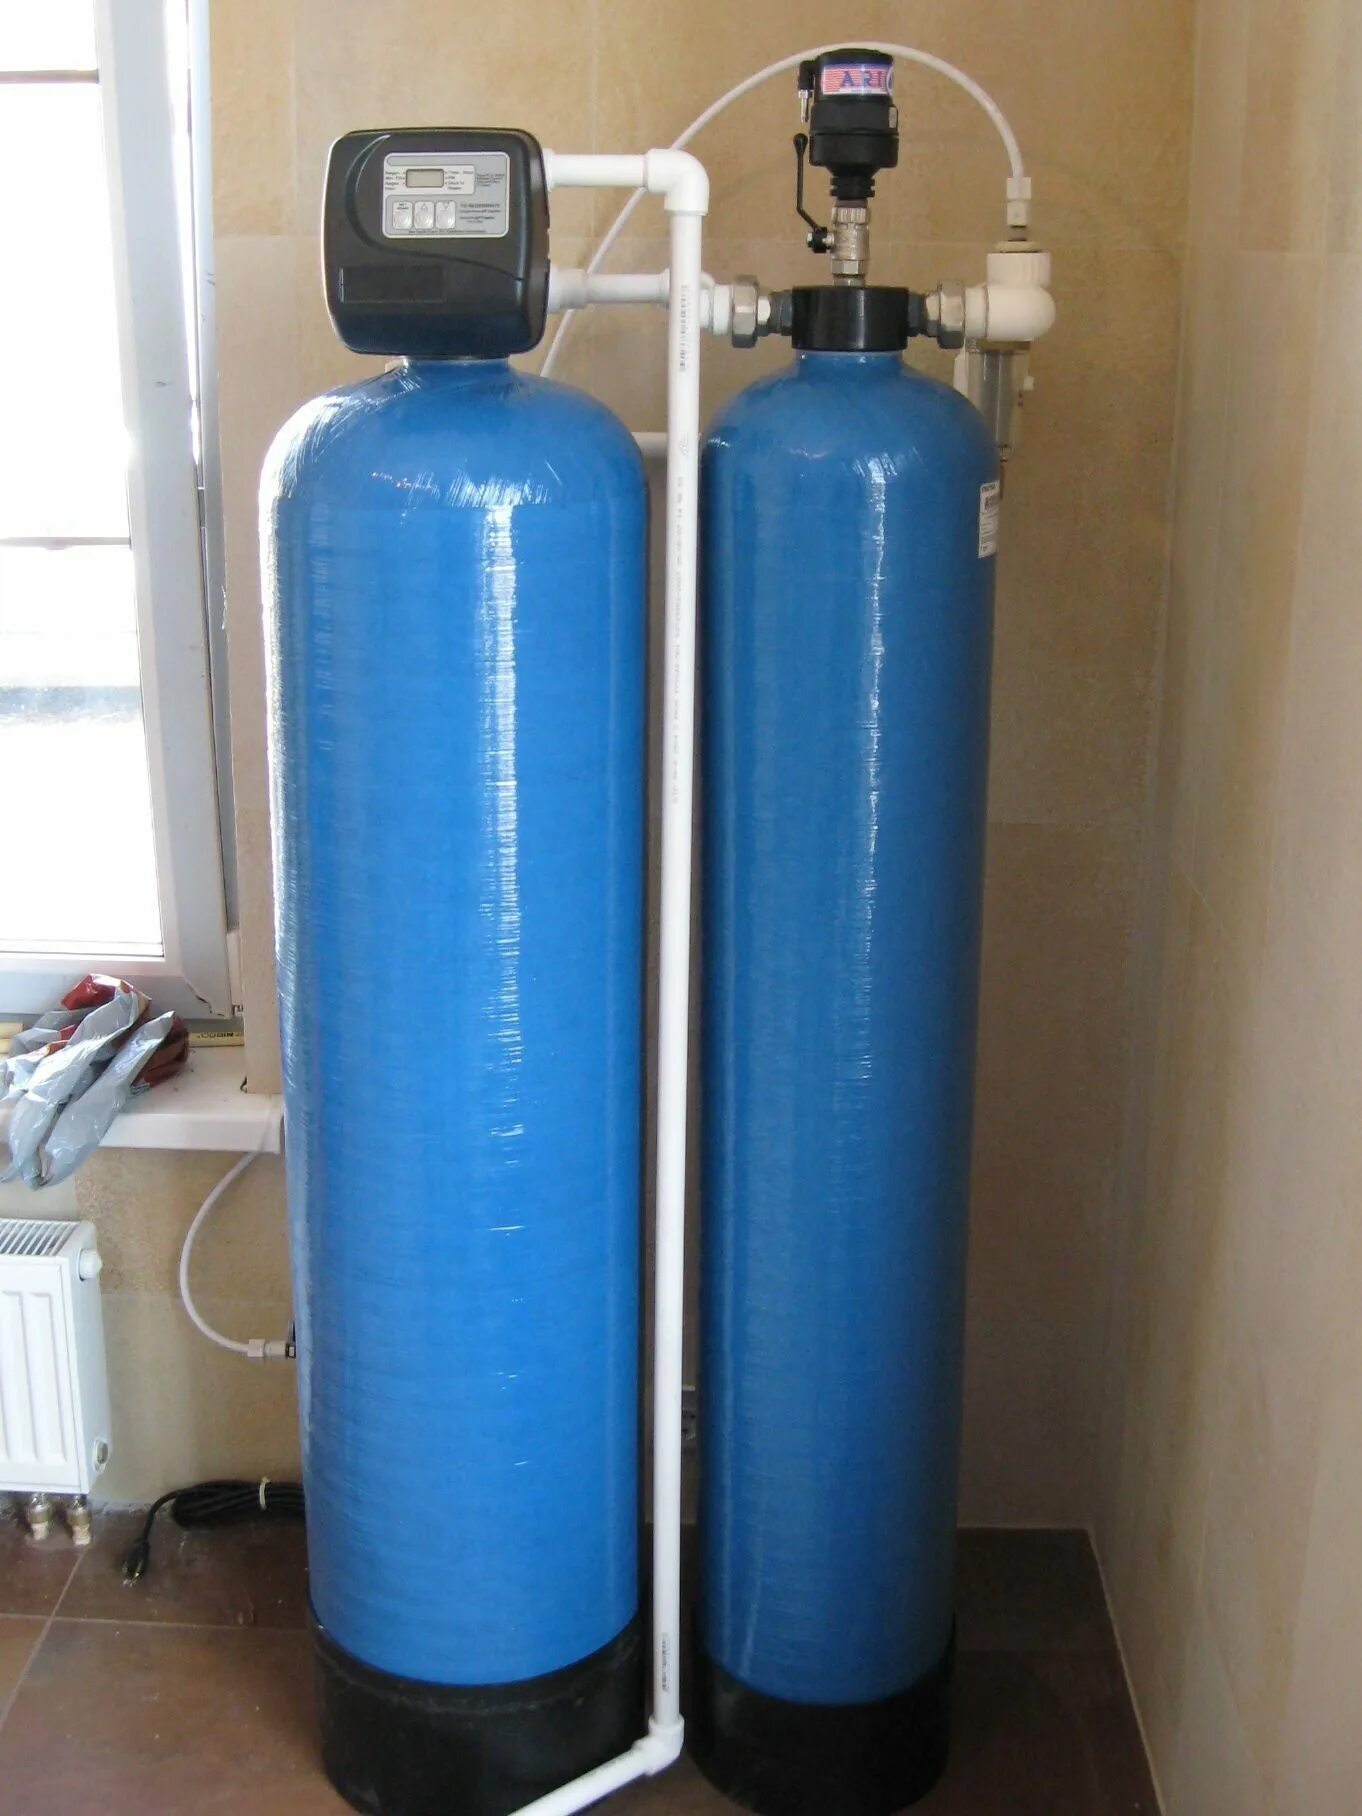 Система очистки обезжелезивания воды. Колонна 1054 обезжелезивания. Аэрационная колонна для очистки воды 1054. Система обезжелезивания воды (очистка воды от железа). Аэрационная колонна для очистки воды